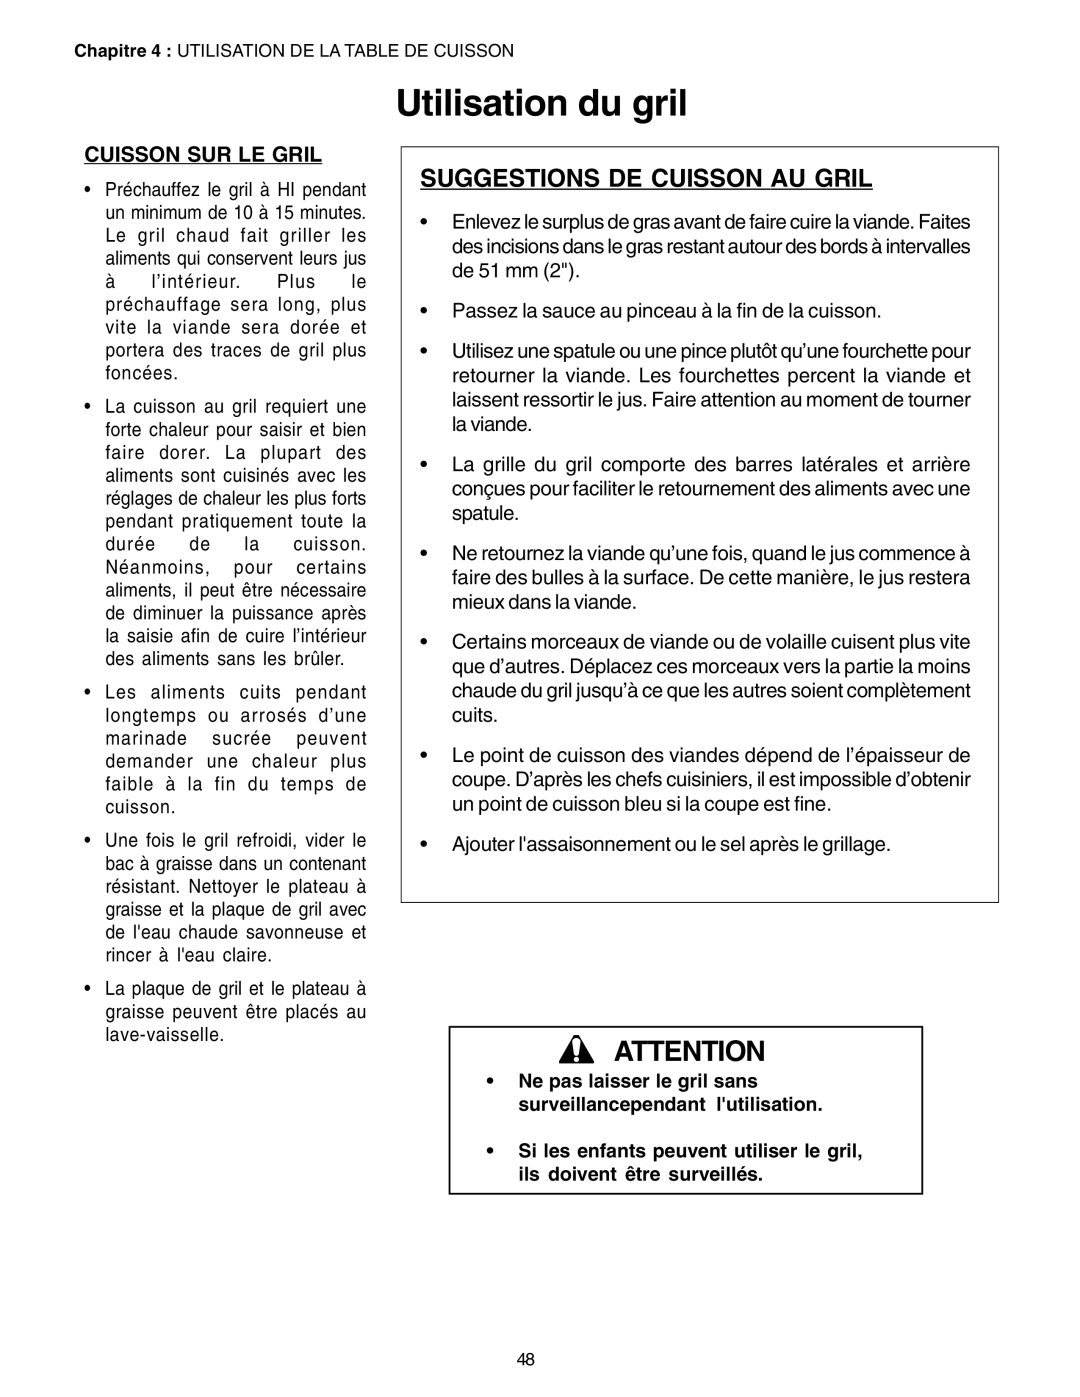 Thermador PC30, P24GE manuel dutilisation Suggestions De Cuisson Au Gril, Utilisation du gril, Cuisson Sur Le Gril 